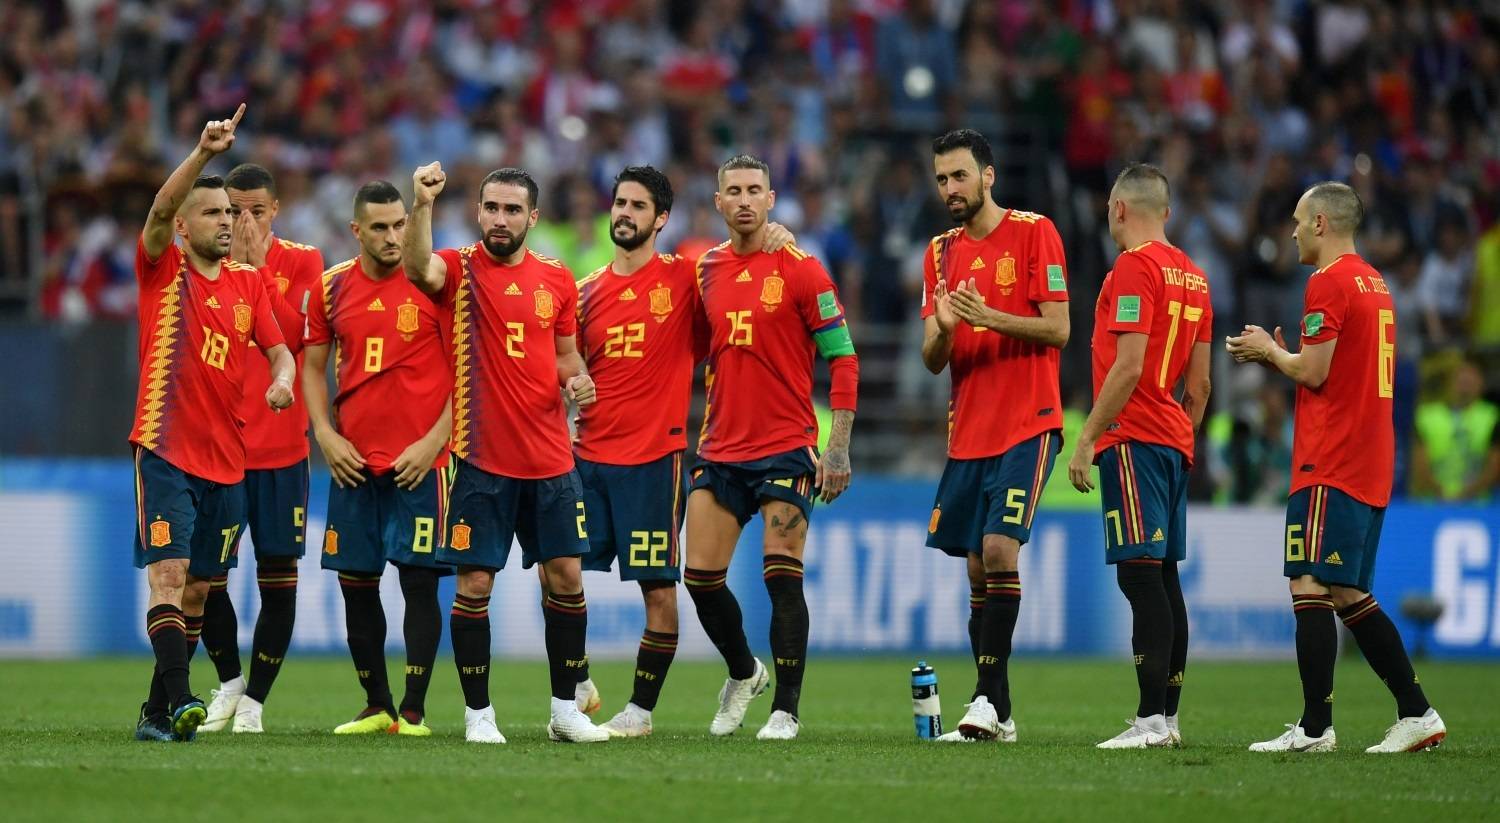 Seleção espanhola vence o prêmio Fair Play da Copa do Mundo - Esportes